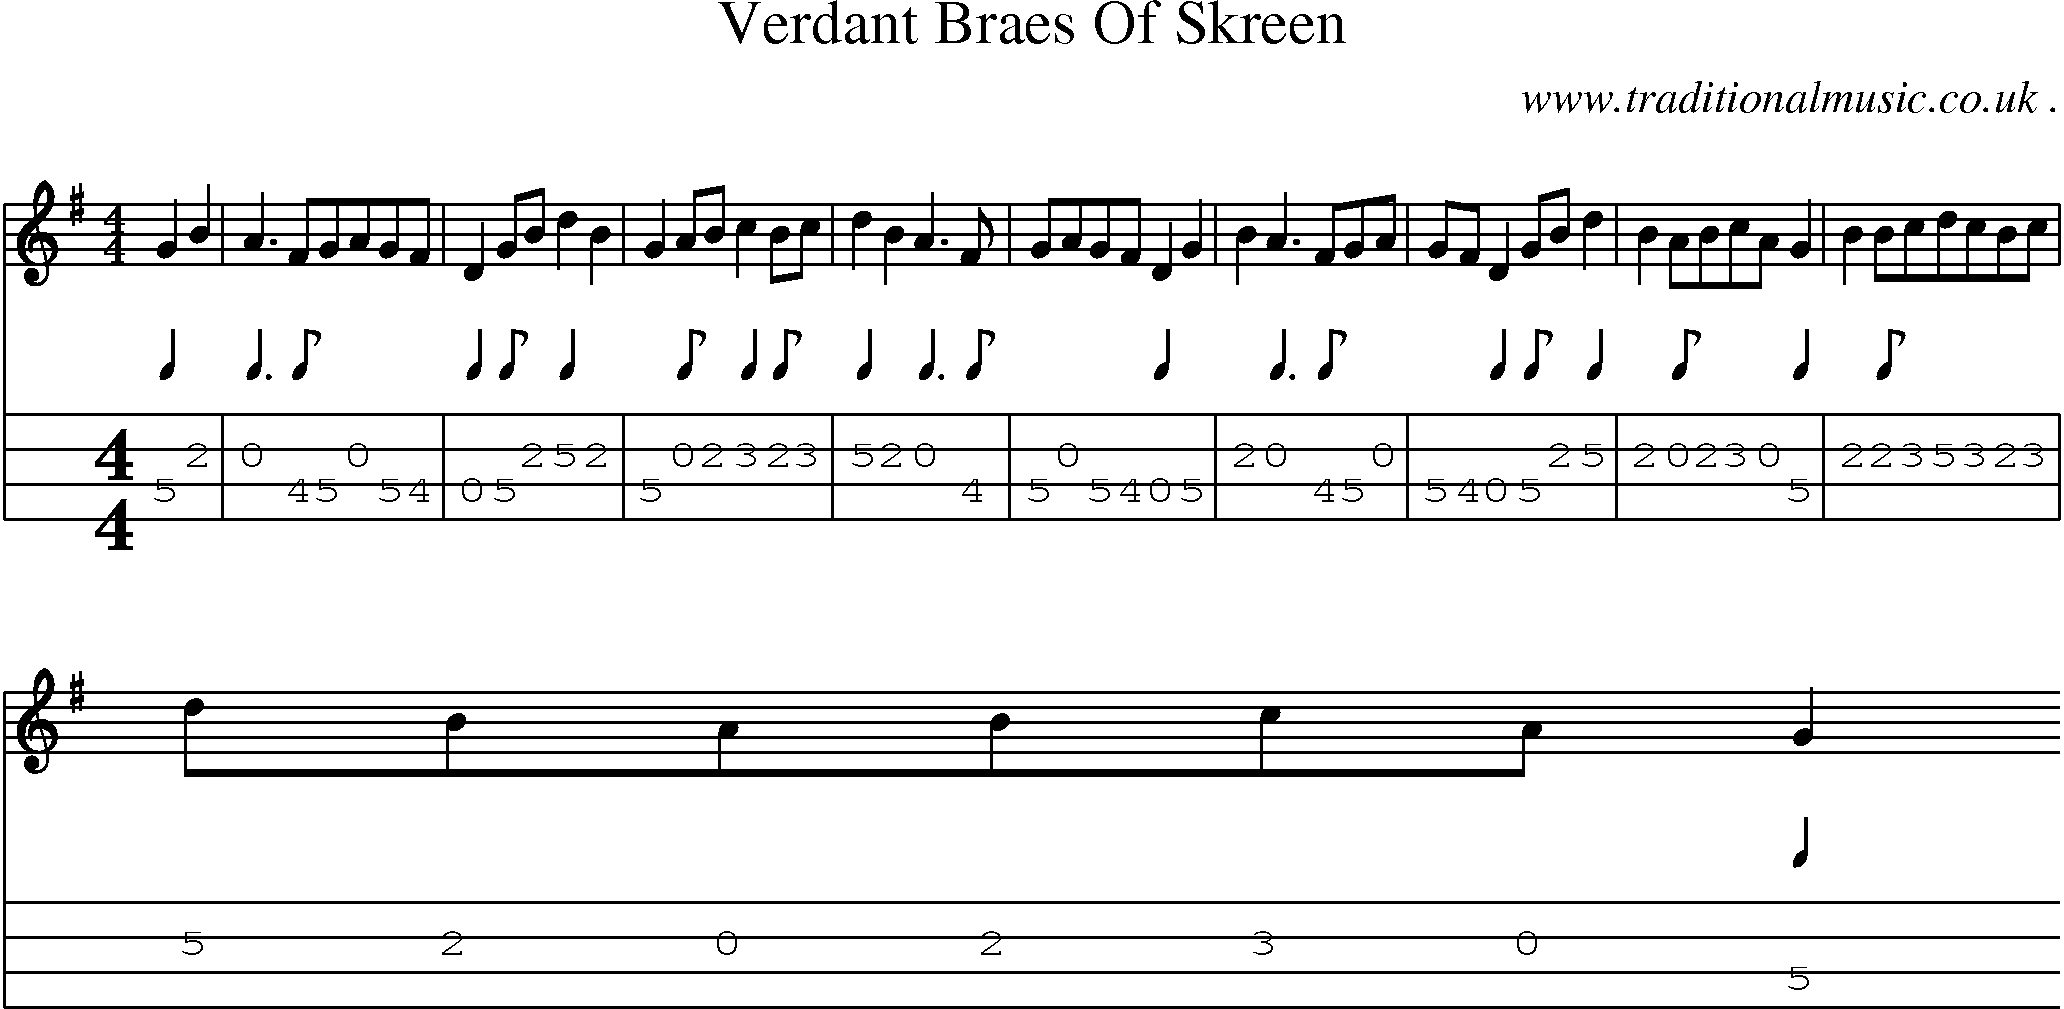 Sheet-Music and Mandolin Tabs for Verdant Braes Of Skreen